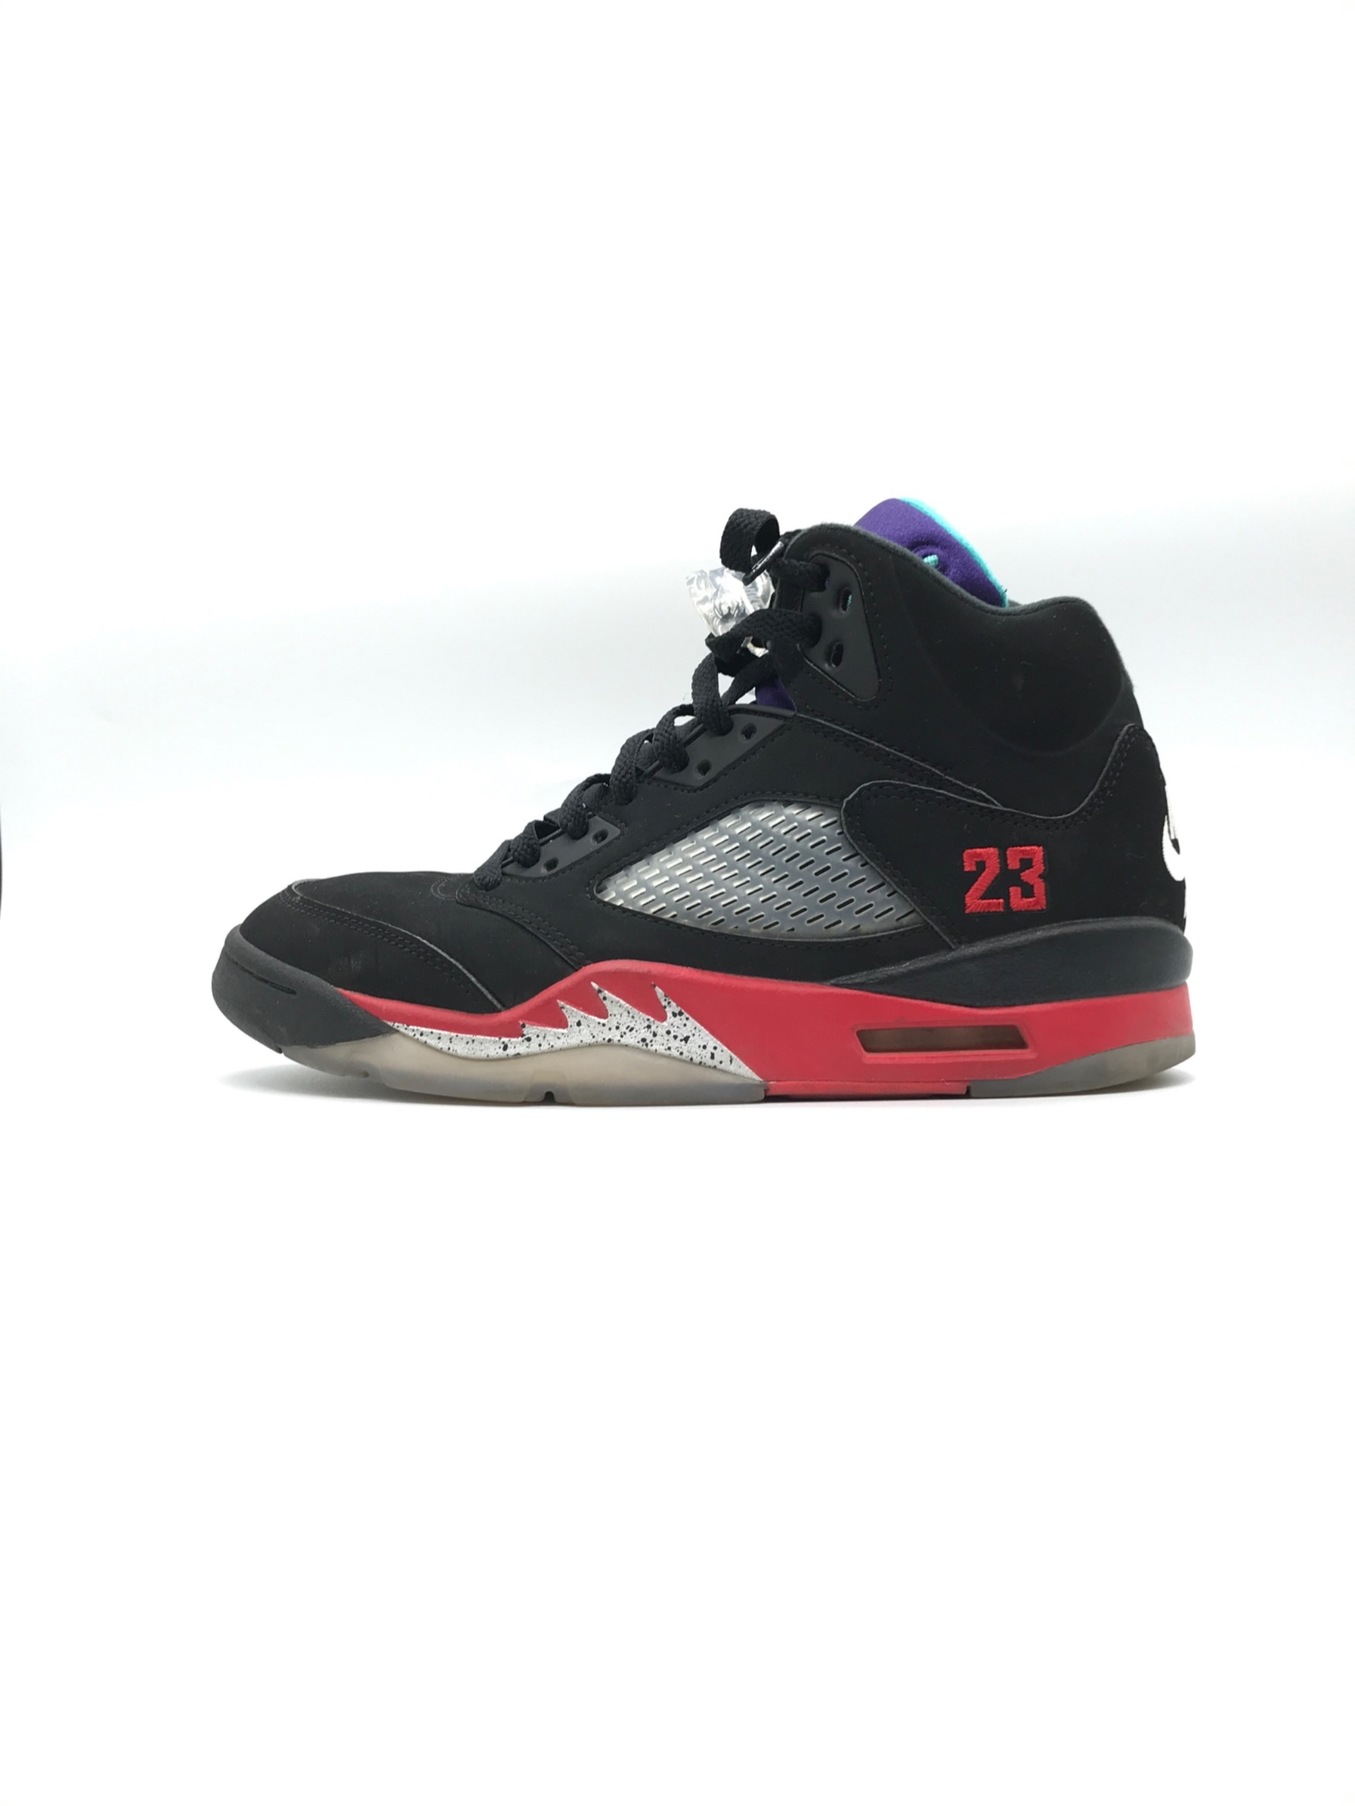 Nike Air Jordan 5 Retro SE Top3 28.0